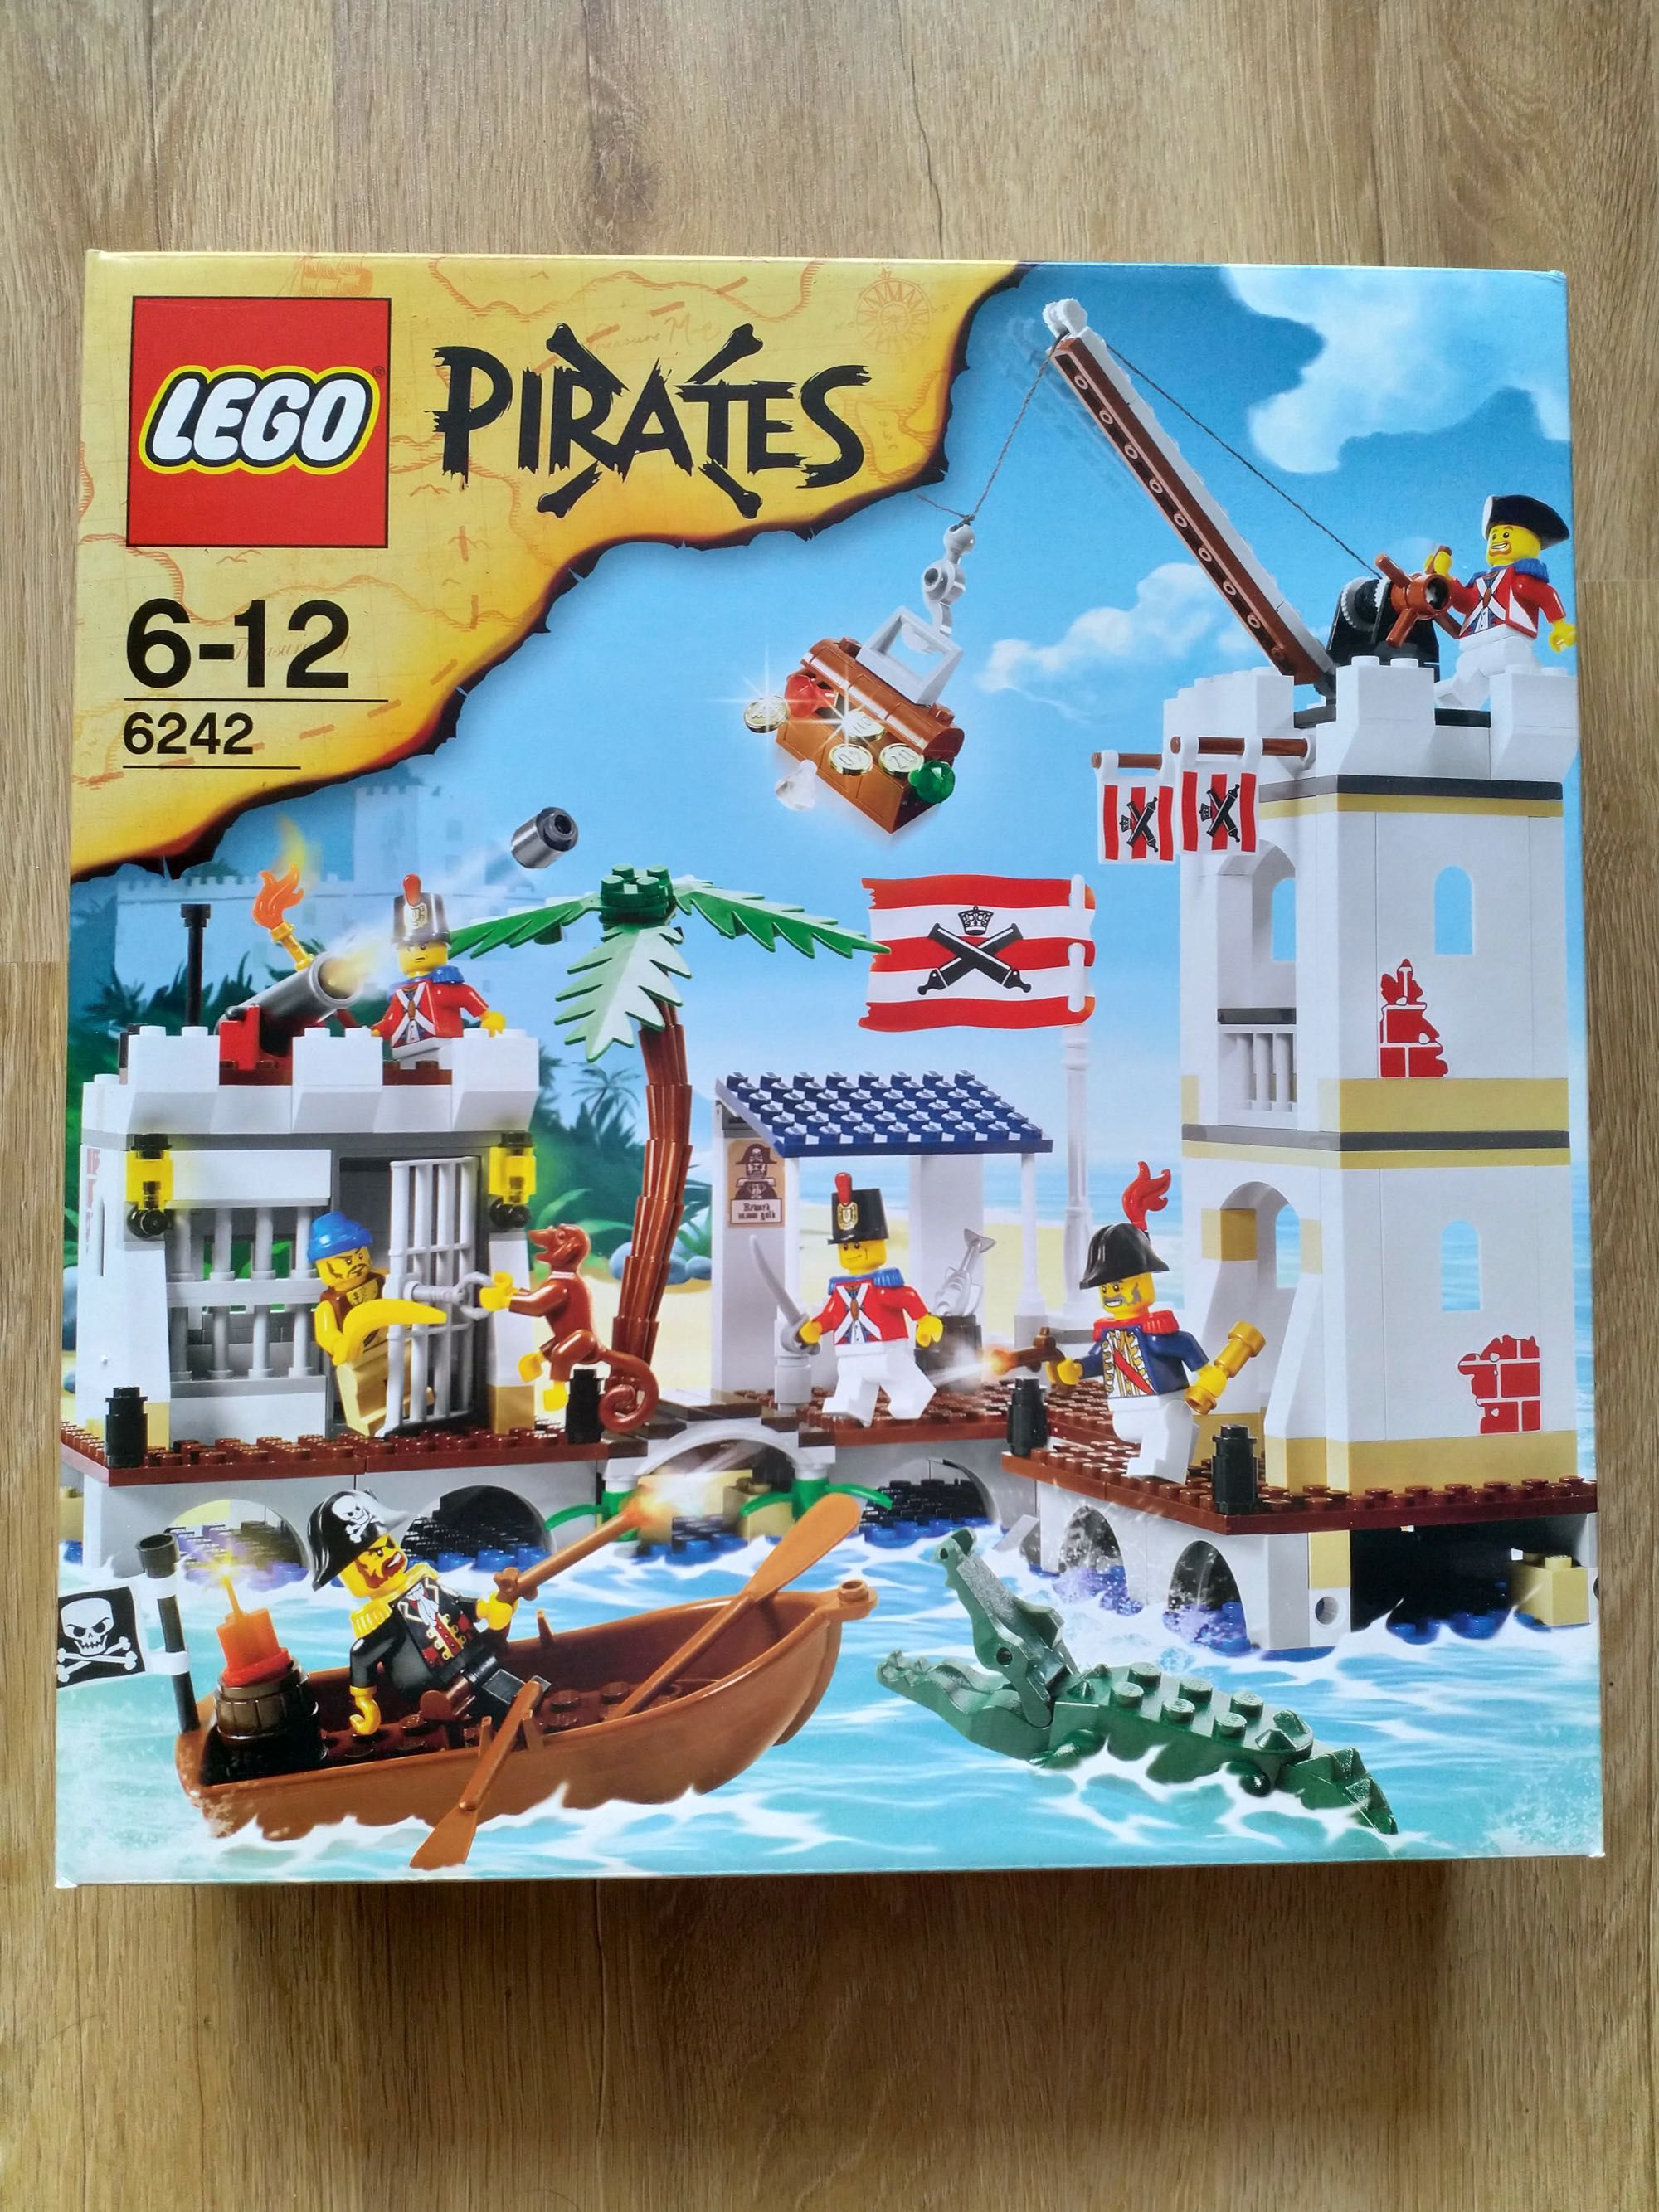 Lego Pirates 6242 MISB Vouzela E Paços De Vilharigues • Portugal